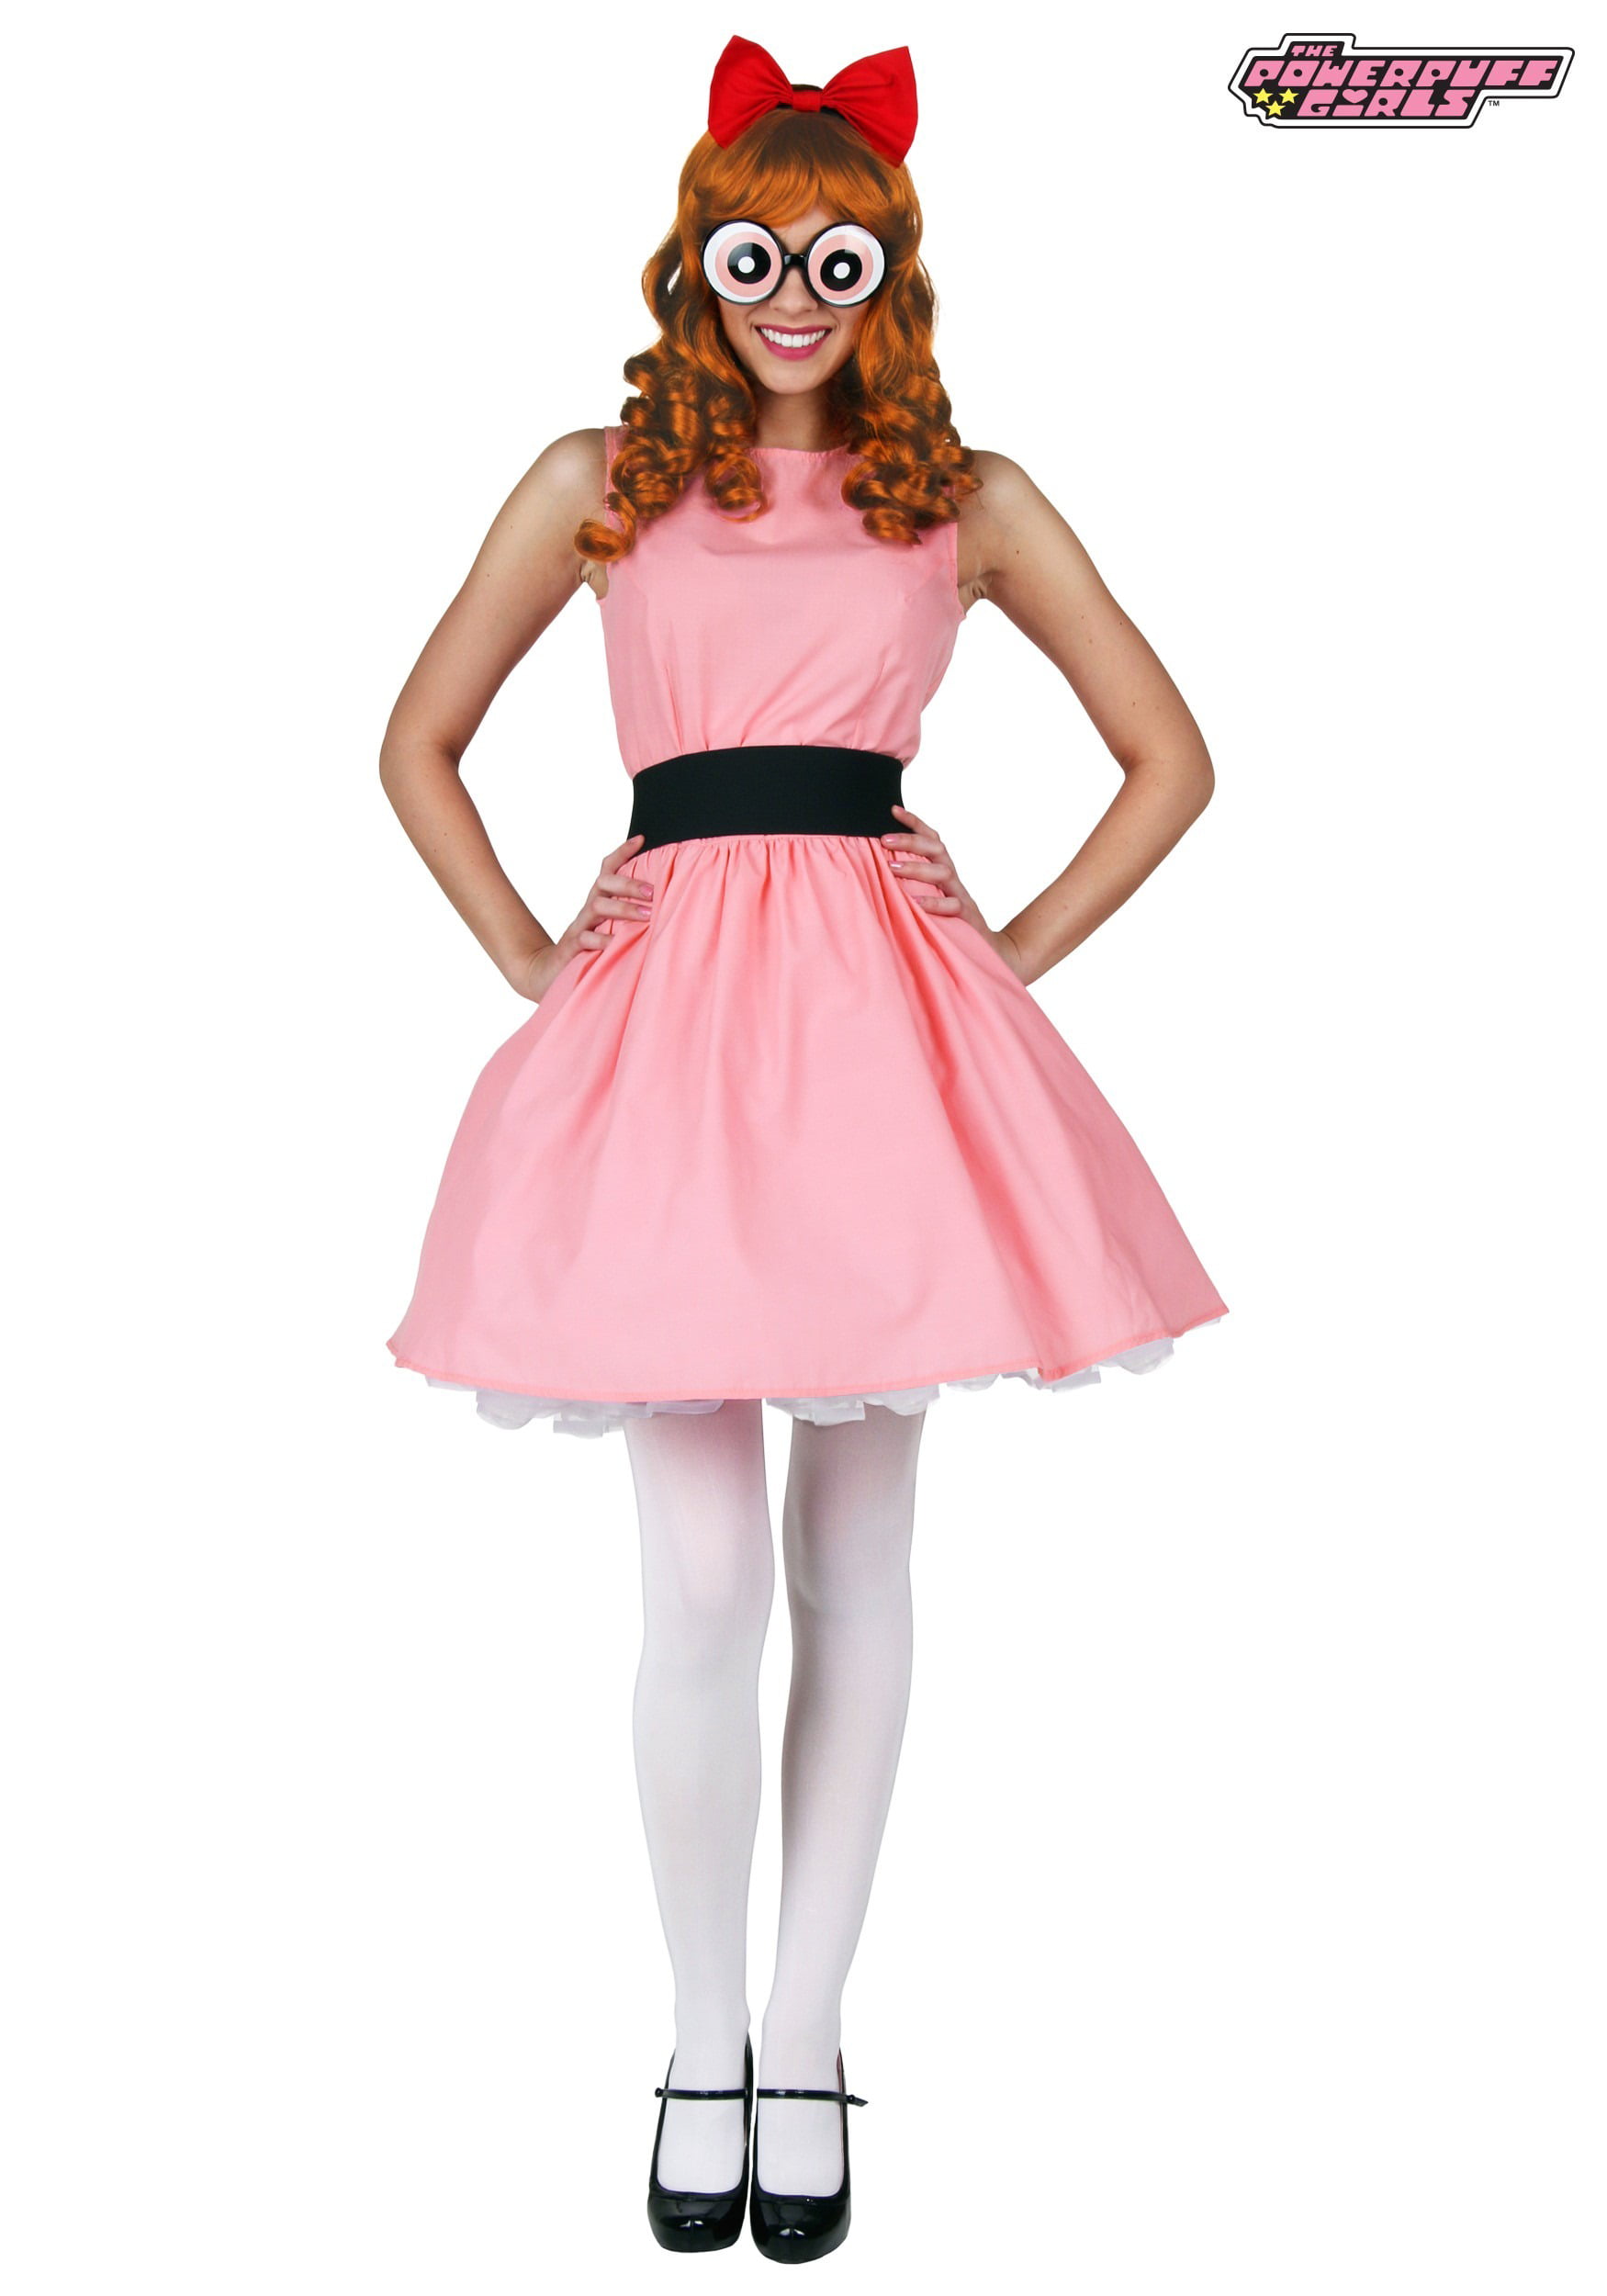 Blossom Powerpuff Girl Costume. the powerpuff girls dress. 